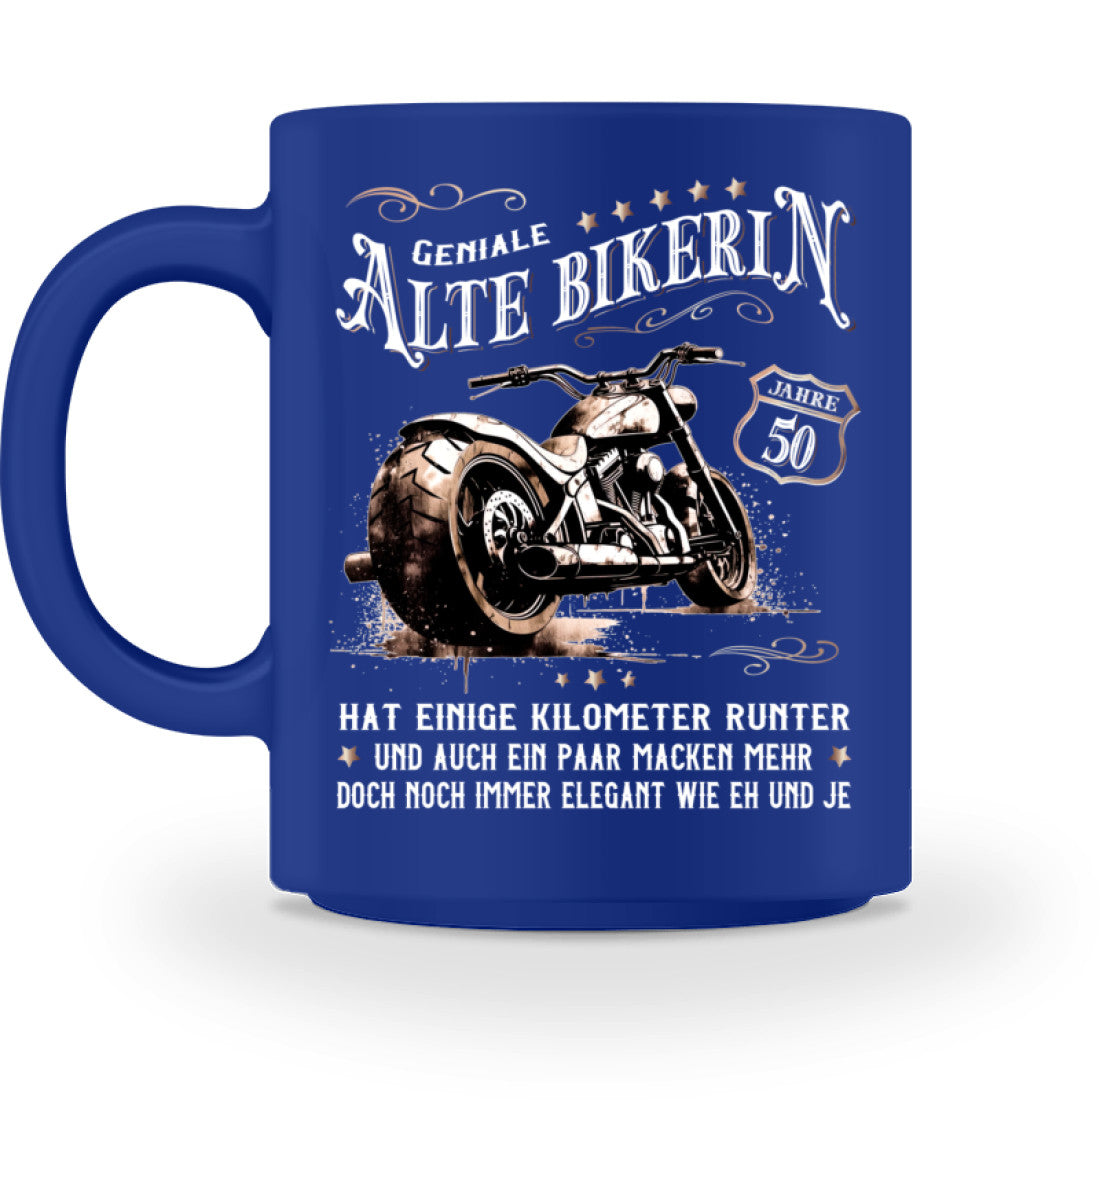 Eine Bikerin Geburtstags-Tasse für Motorradfahrerinnen, von Wingbikers, mit dem beidseitigen Aufdruck, Alte Bikerin - 50 Jahre - Einige Kilometer Runter - Doch elegant wie eh und je, in blau.